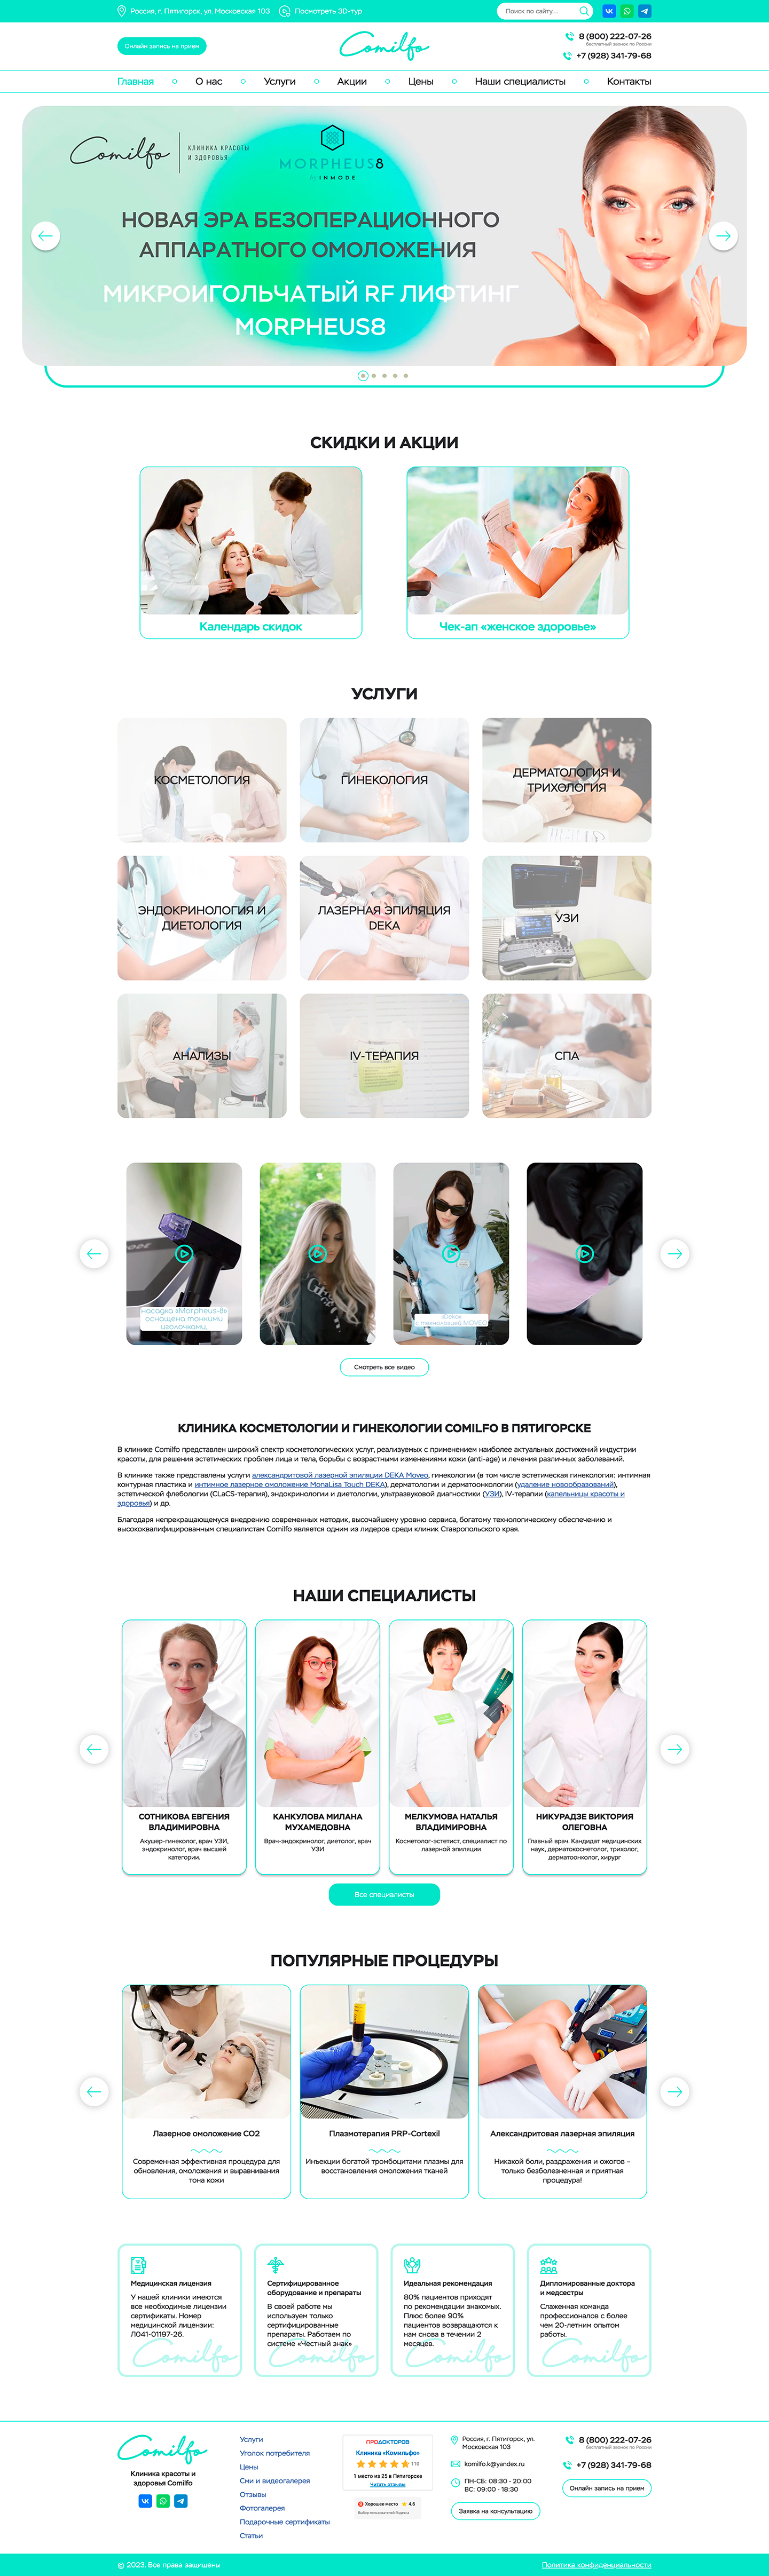 Редизайн сайта клиники косметологии и гинекологии Comilfo в Пятигорске